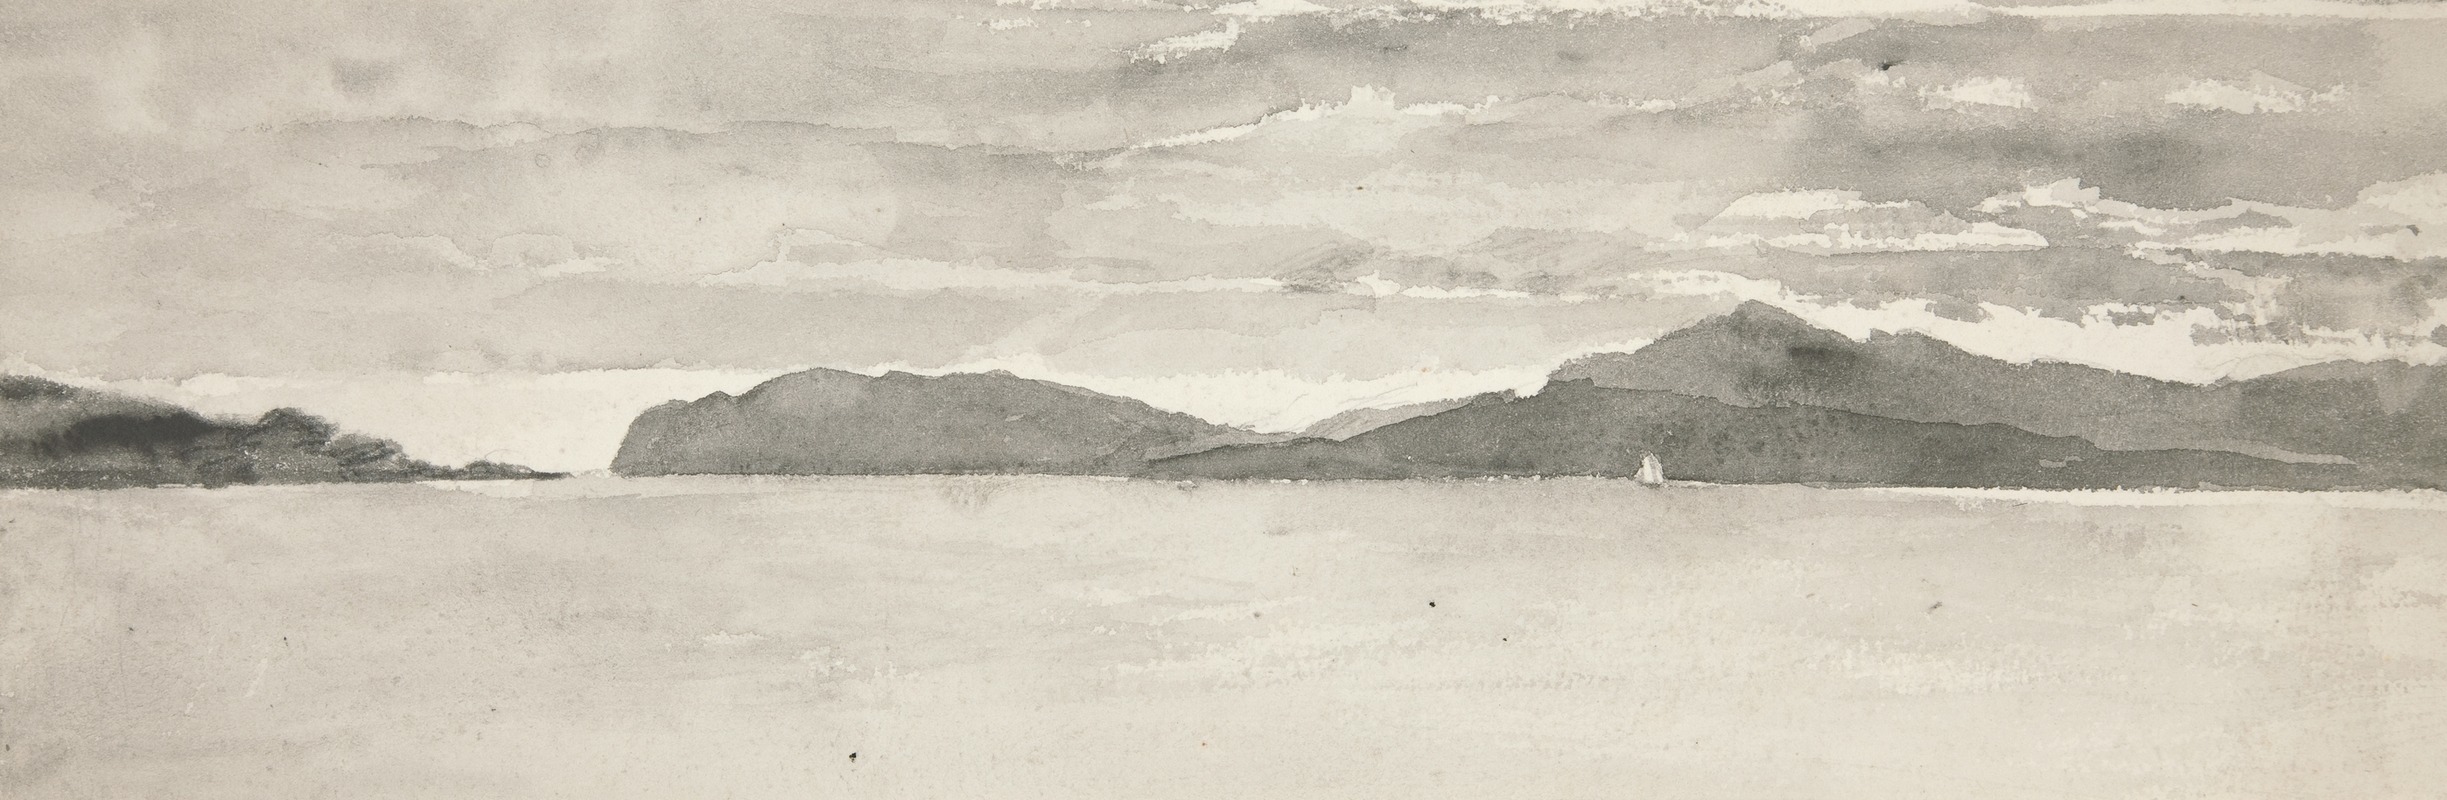 Edwin Austin Abbey - Water scene with landscape